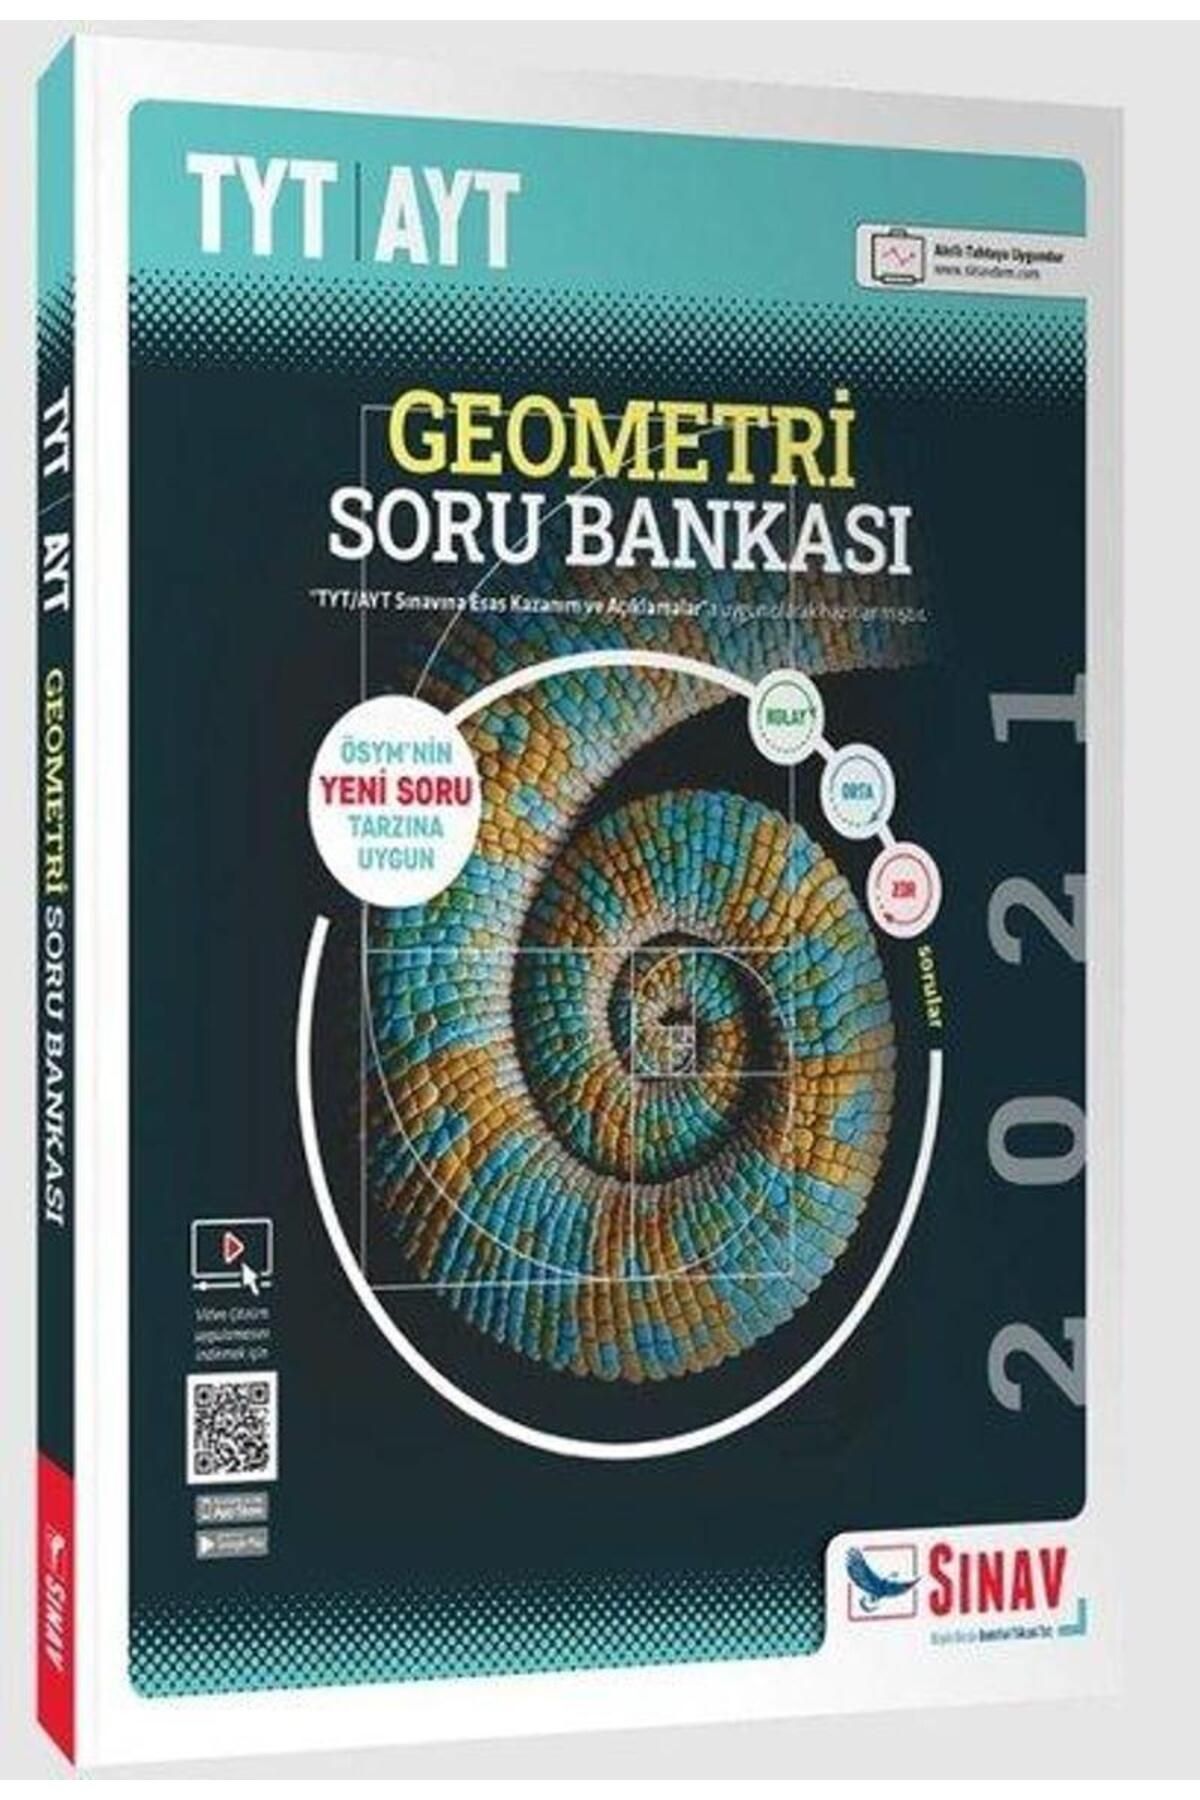 Sınav Yayınları TYT AYT Geometri Soru Bankası